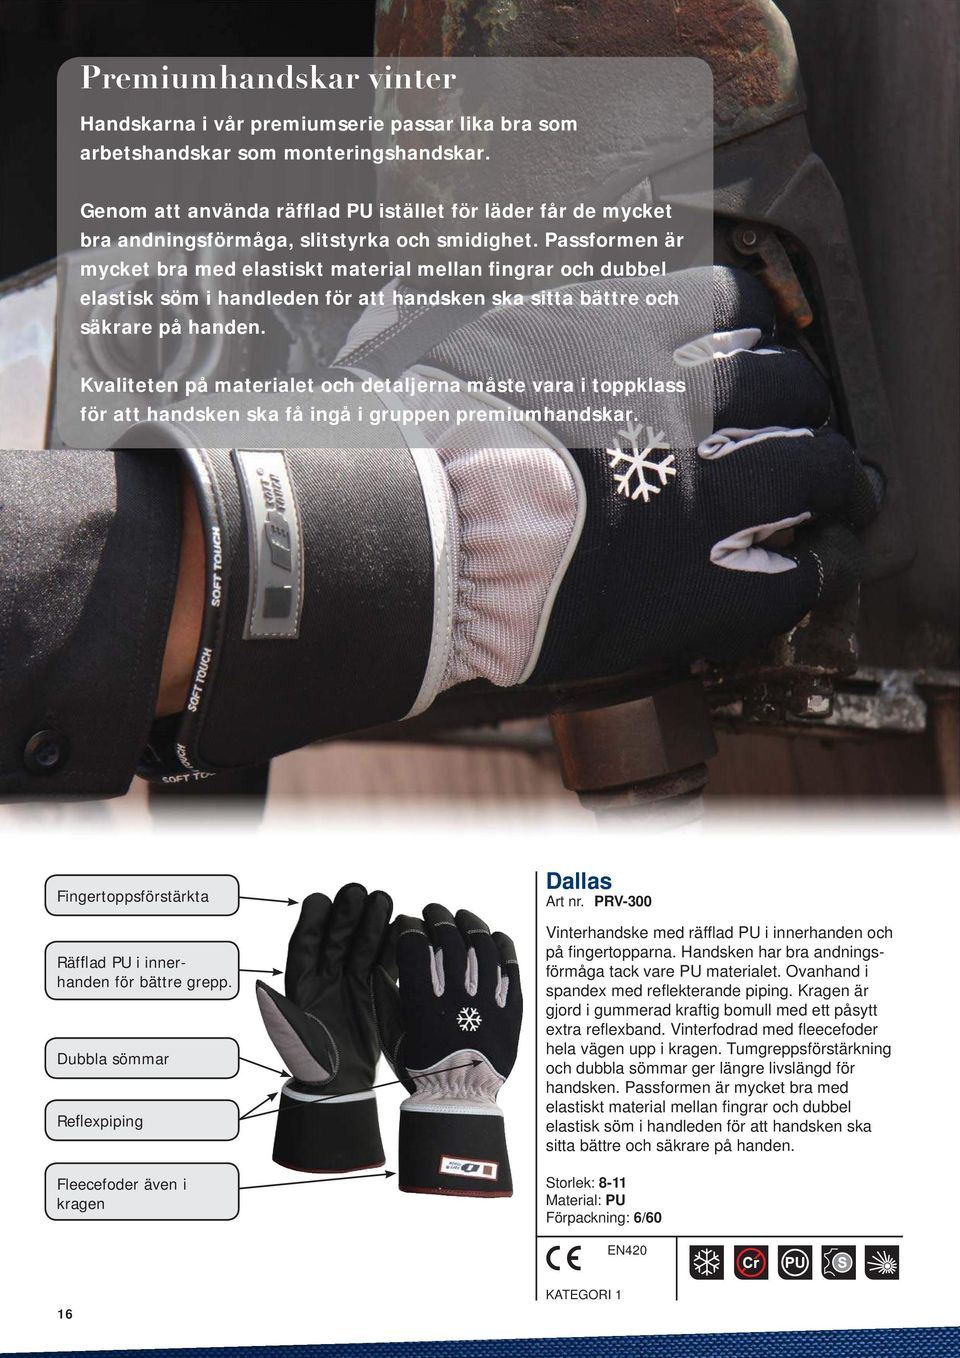 Passformen är mycket bra med elastiskt material mellan fingrar och dubbel elastisk söm i handleden för att handsken ska sitta bättre och säkrare på handen.